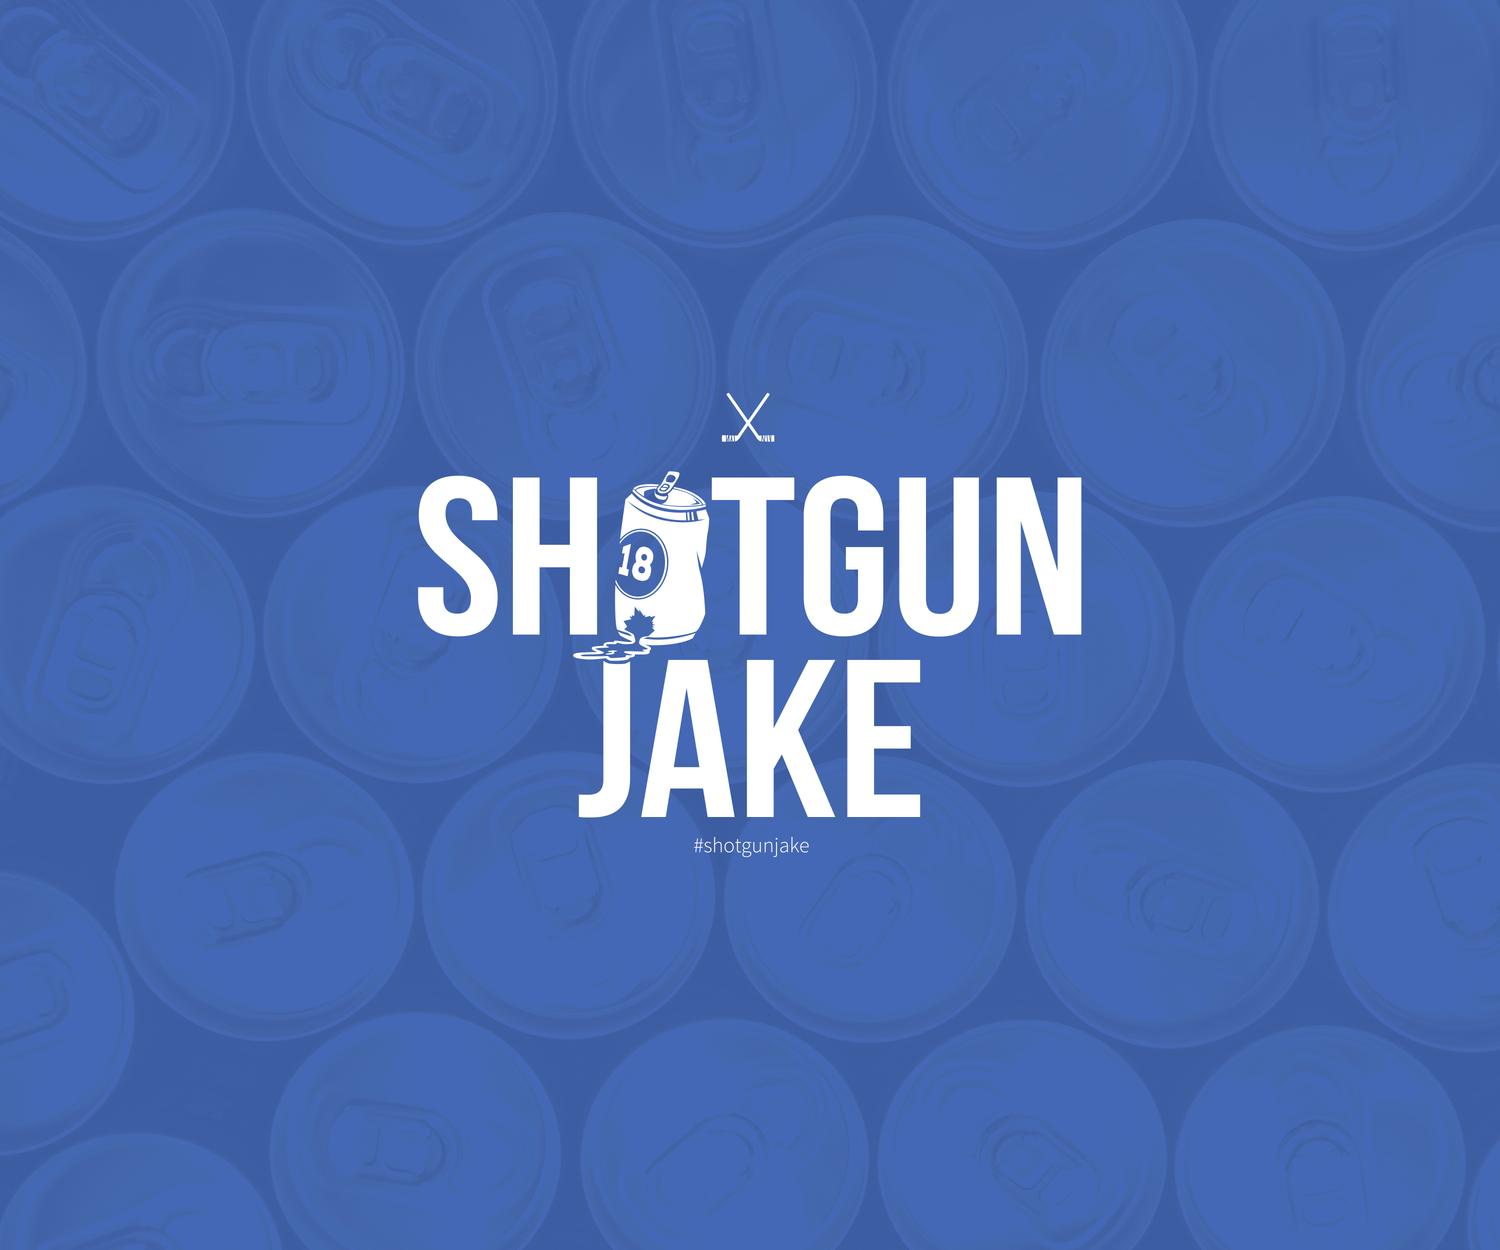 shotgunjake-banner.png